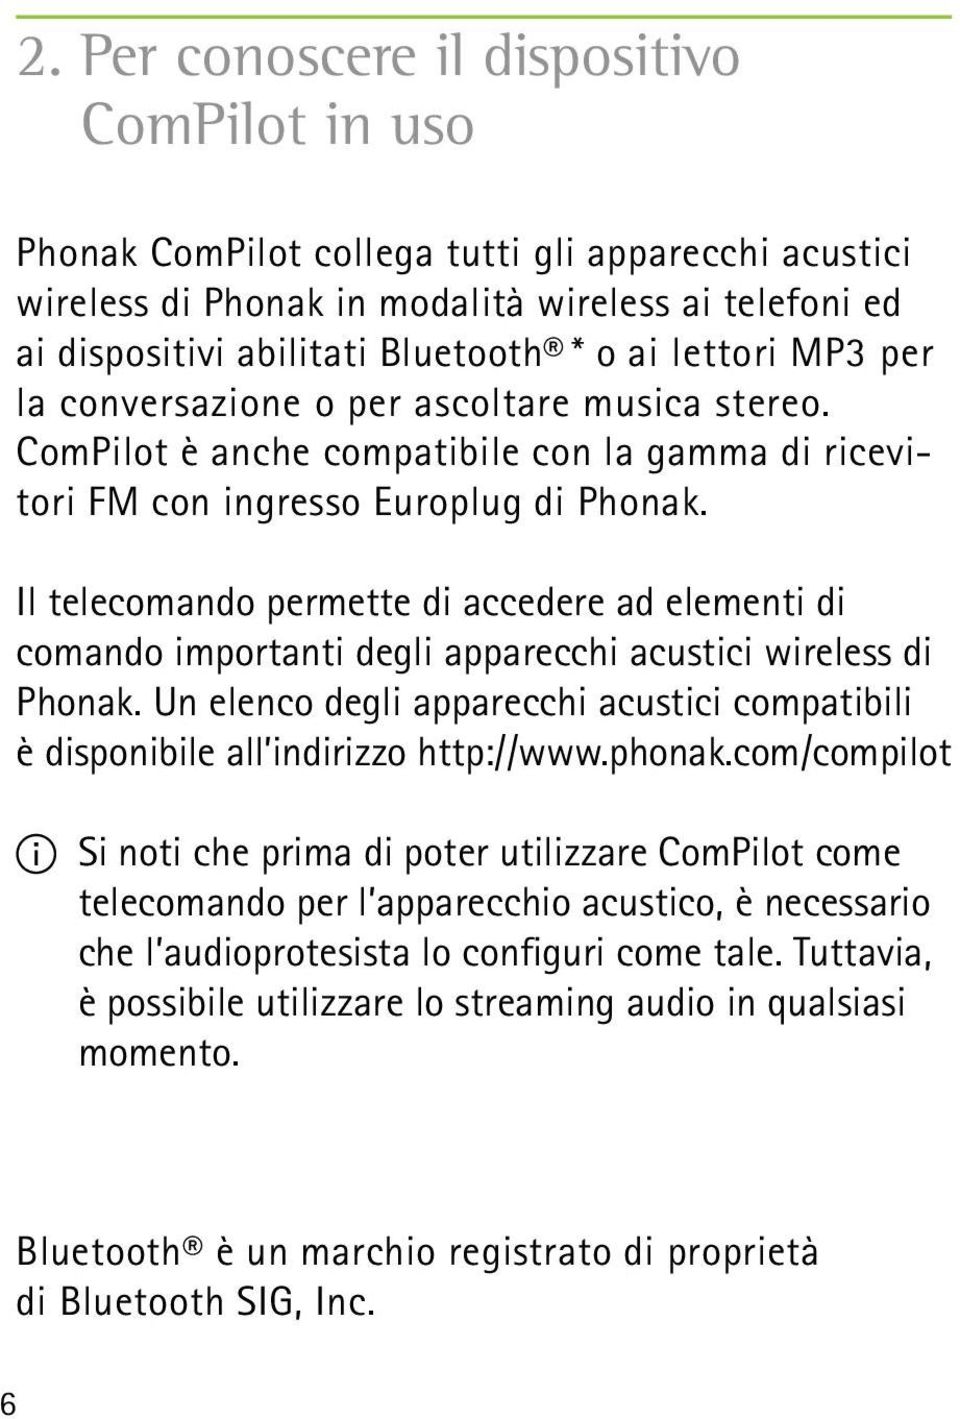 Il telecomando permette di accedere ad elementi di comando importanti degli apparecchi acustici wireless di Phonak.